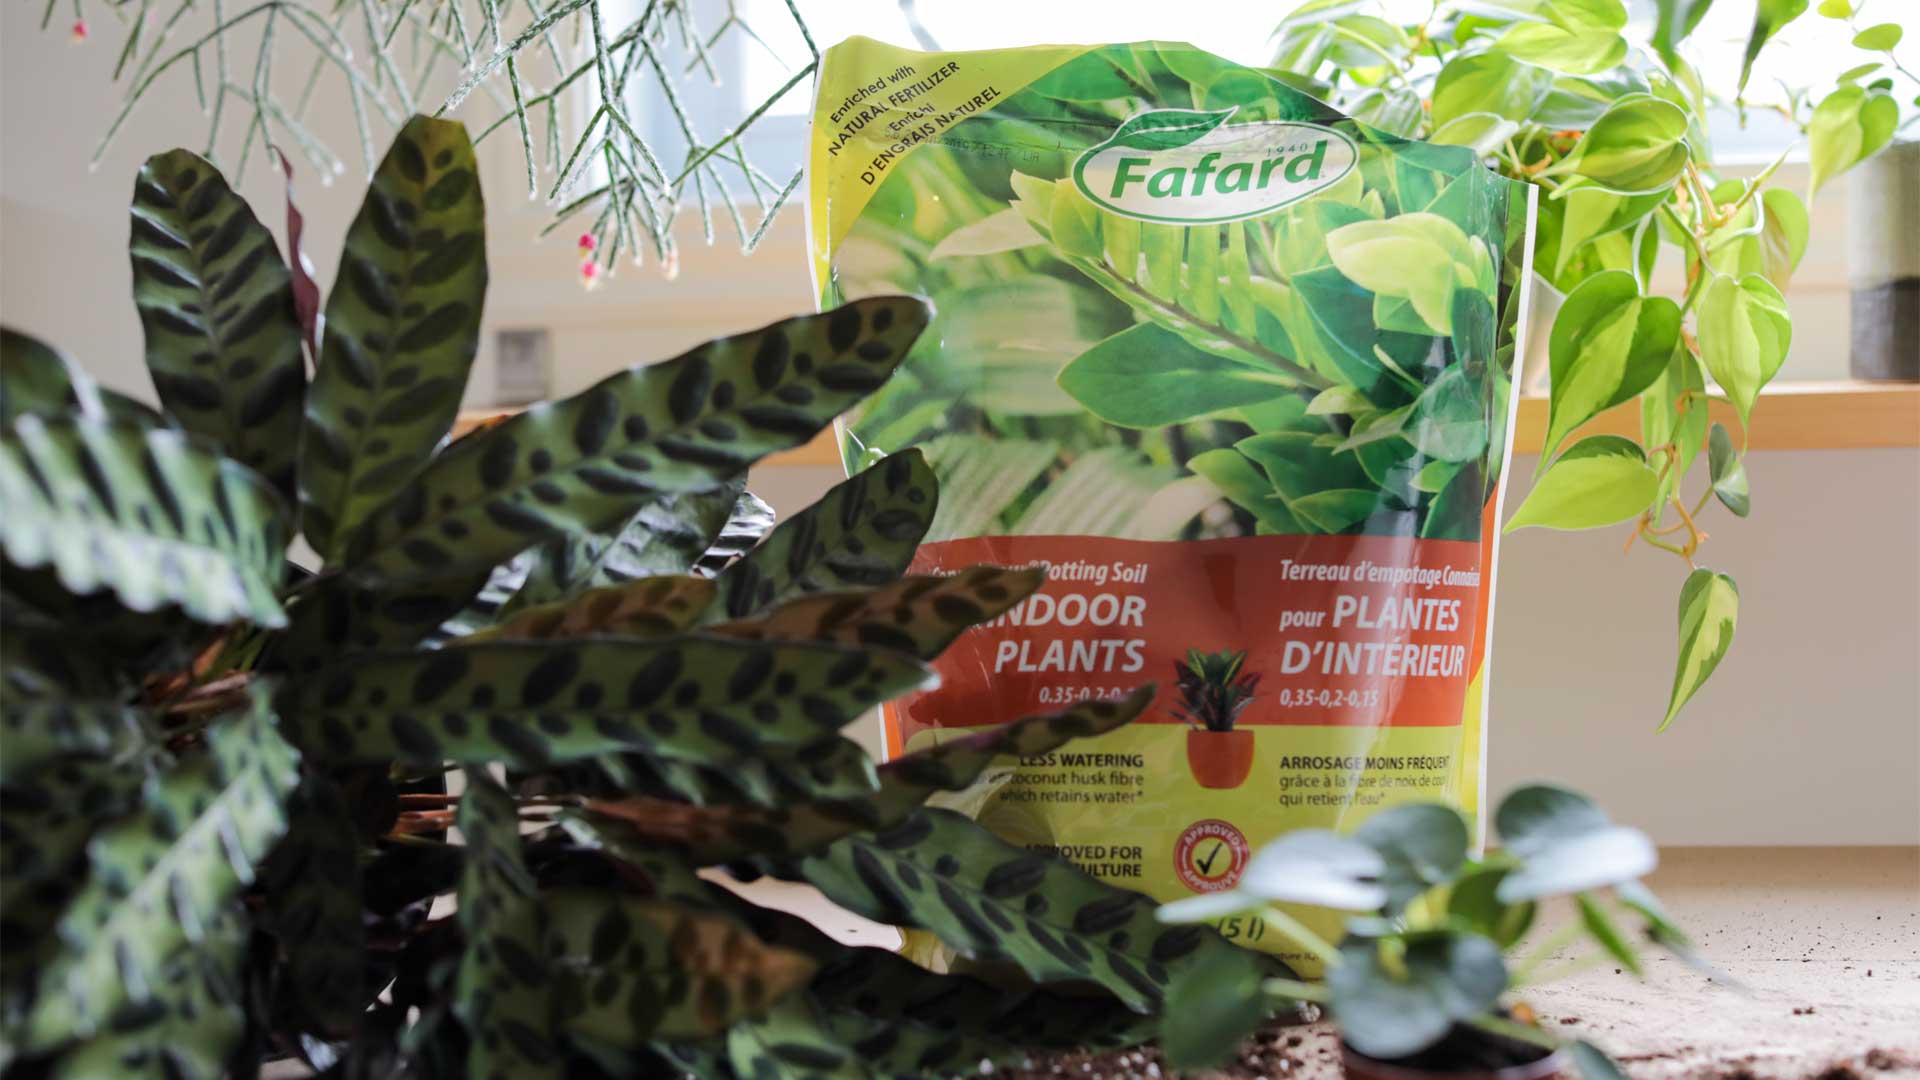 FAFARD Terreau d'empotage pour plantes tropicales POSU10C